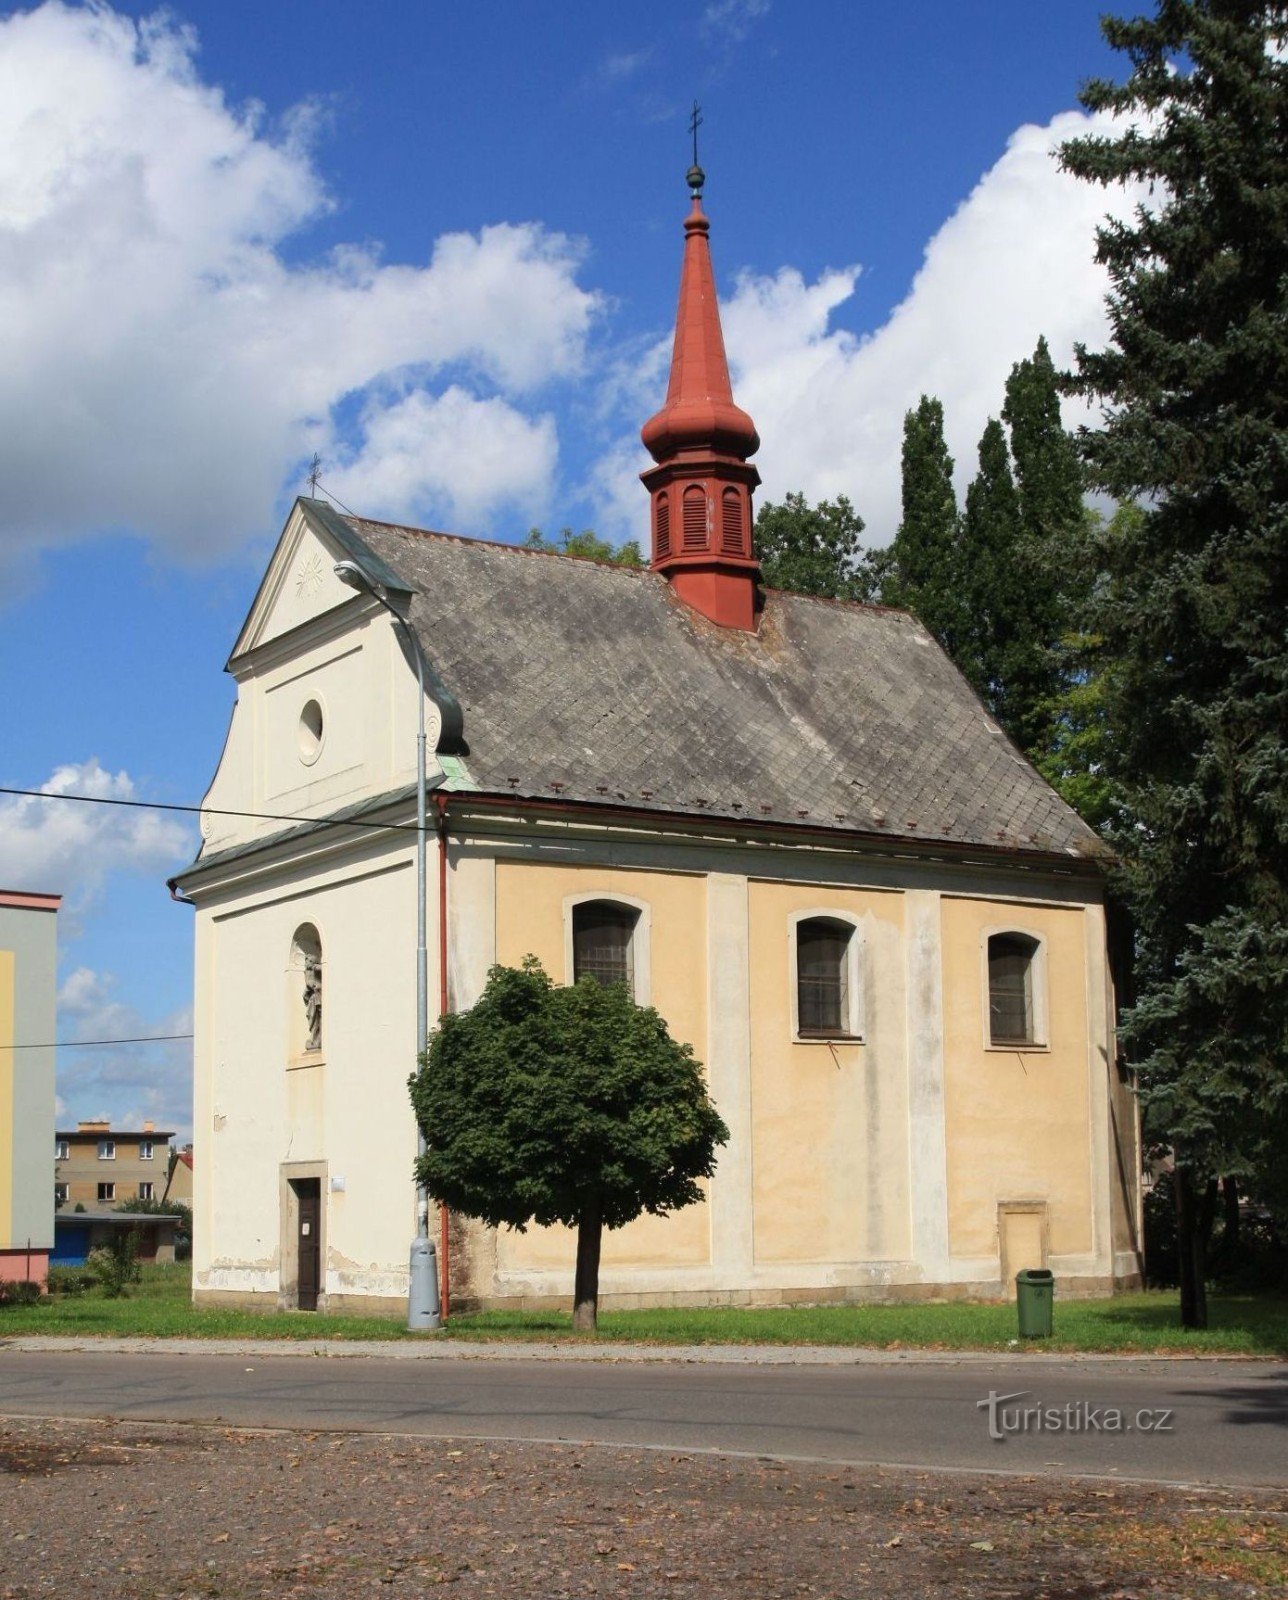 Ústí nad Orlicí - nhà nguyện của St. Anne